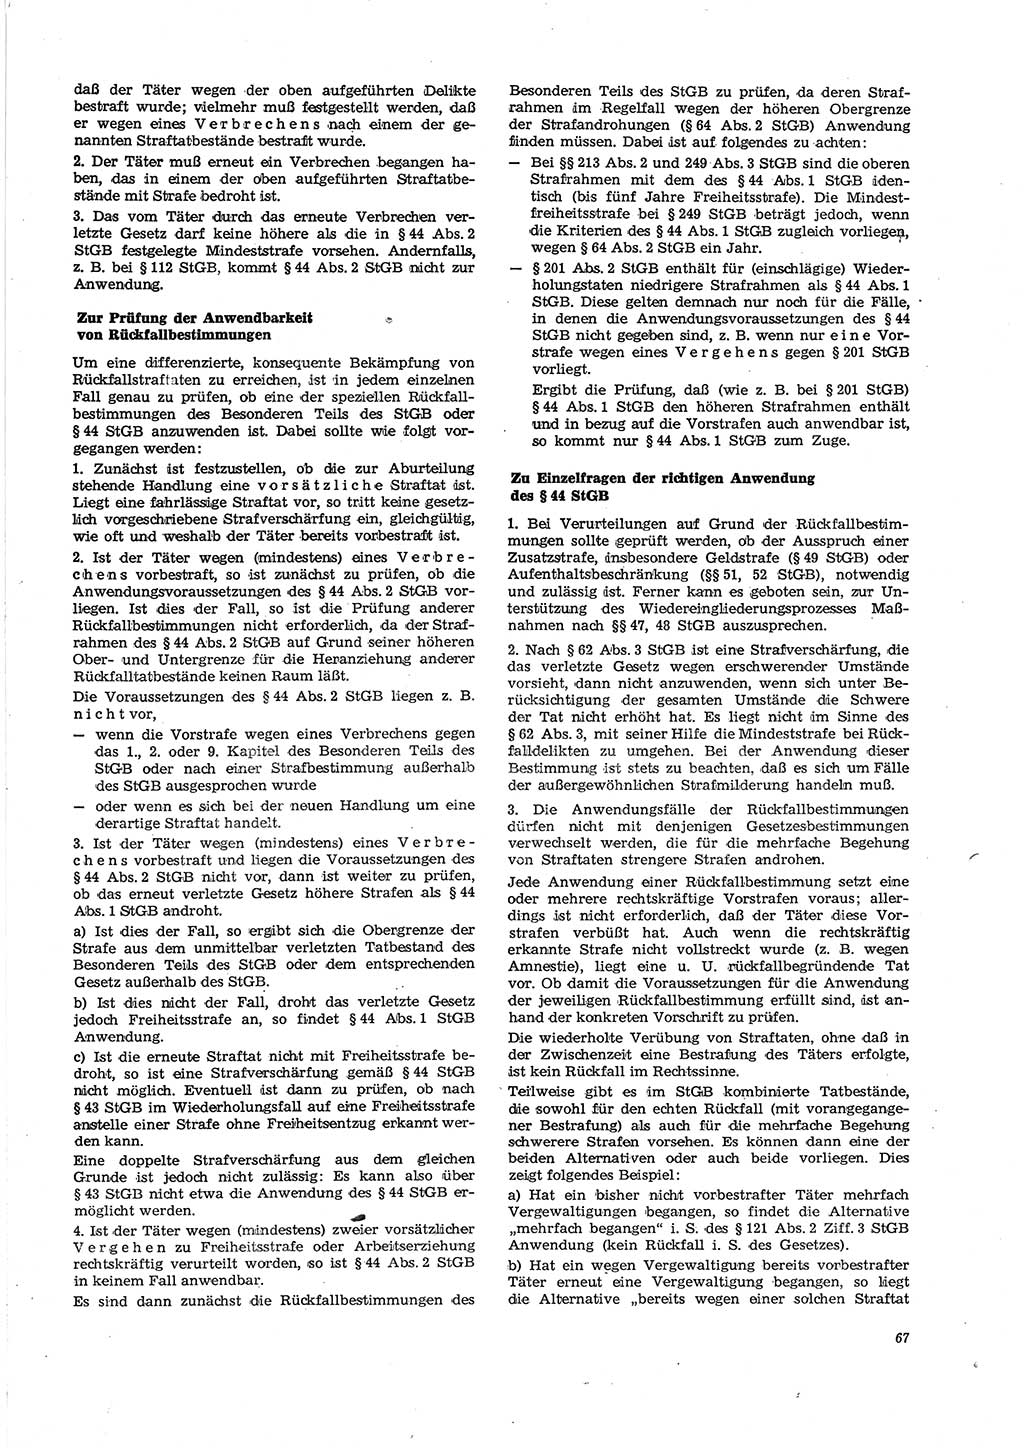 Neue Justiz (NJ), Zeitschrift für Recht und Rechtswissenschaft [Deutsche Demokratische Republik (DDR)], 29. Jahrgang 1975, Seite 67 (NJ DDR 1975, S. 67)